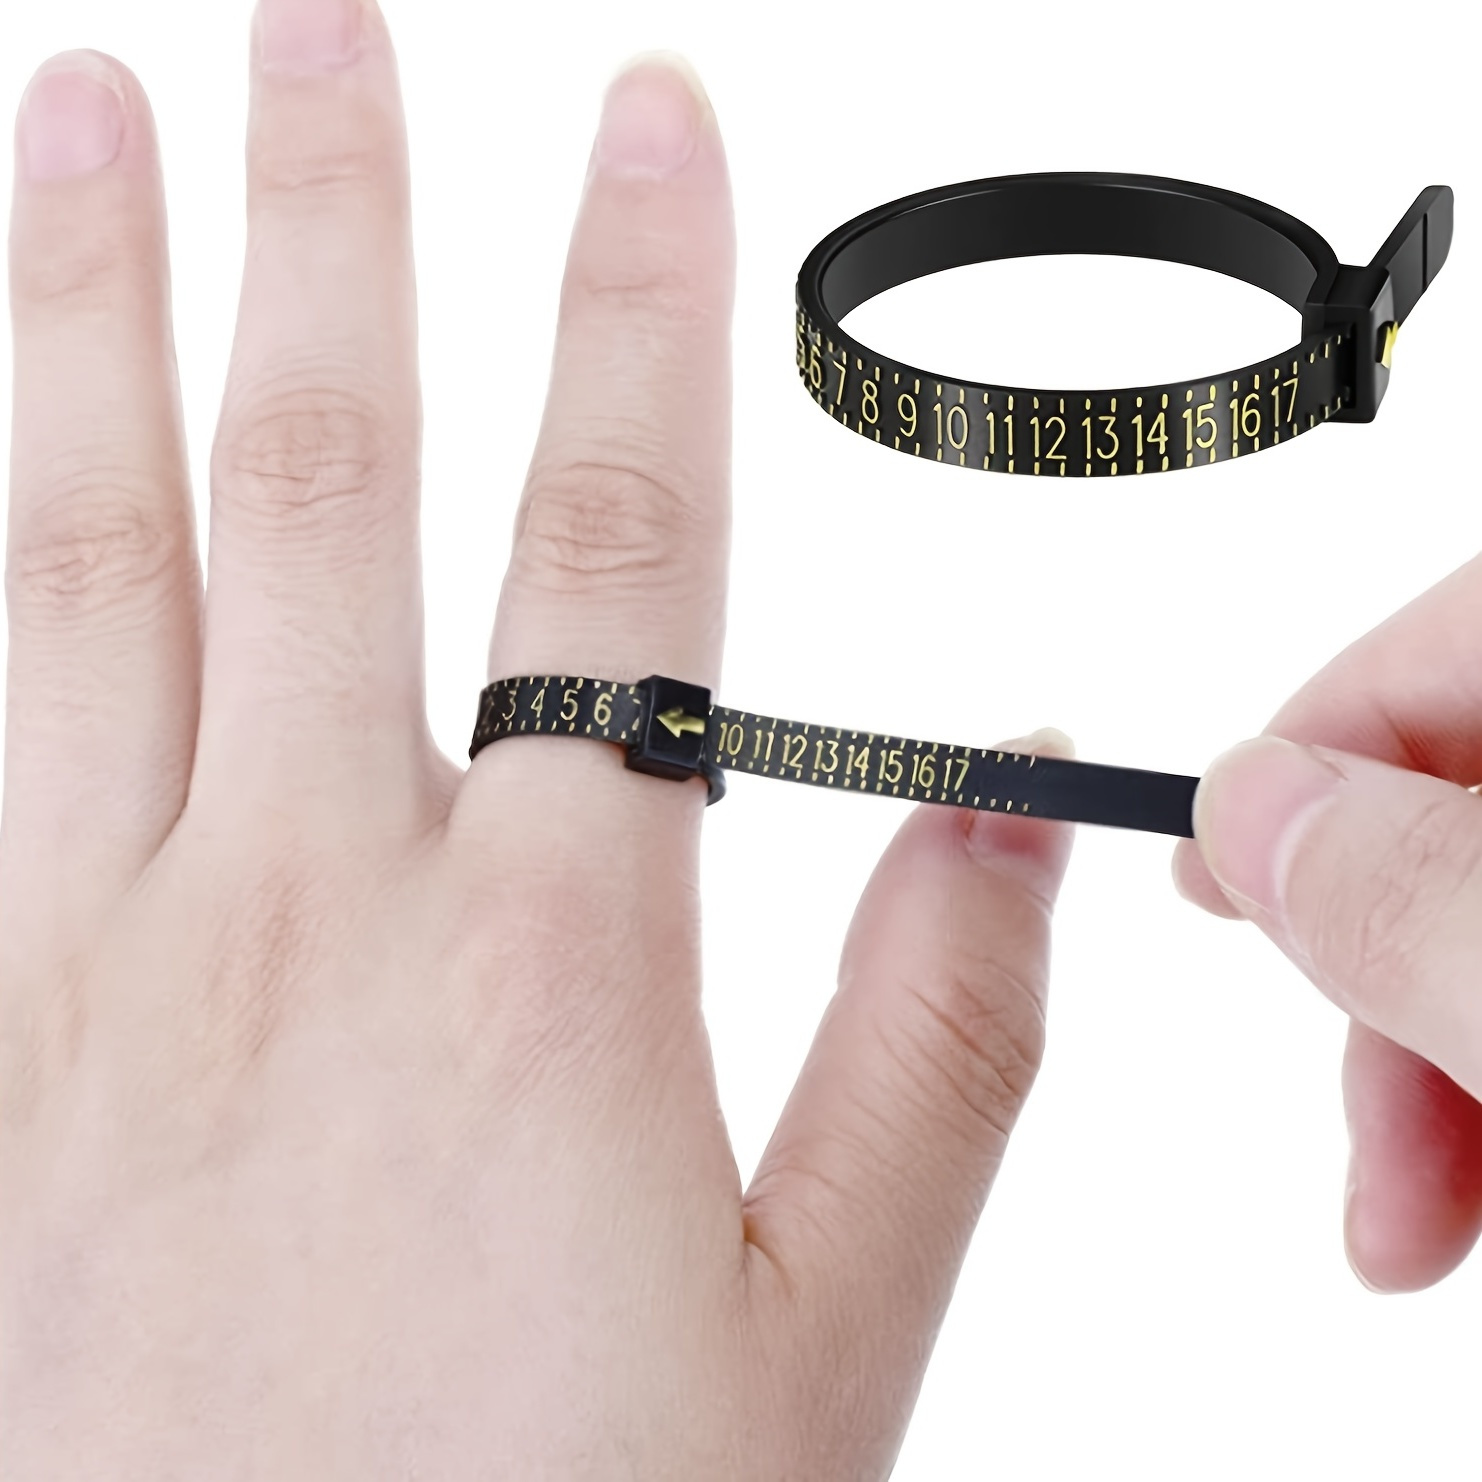  Medidor de anillos de plástico ajustable – Herramienta de  medición para dedos – Medidor de dedos para el tamaño del anillo – Adecuado  para mujeres y hombres – Medición de anillo